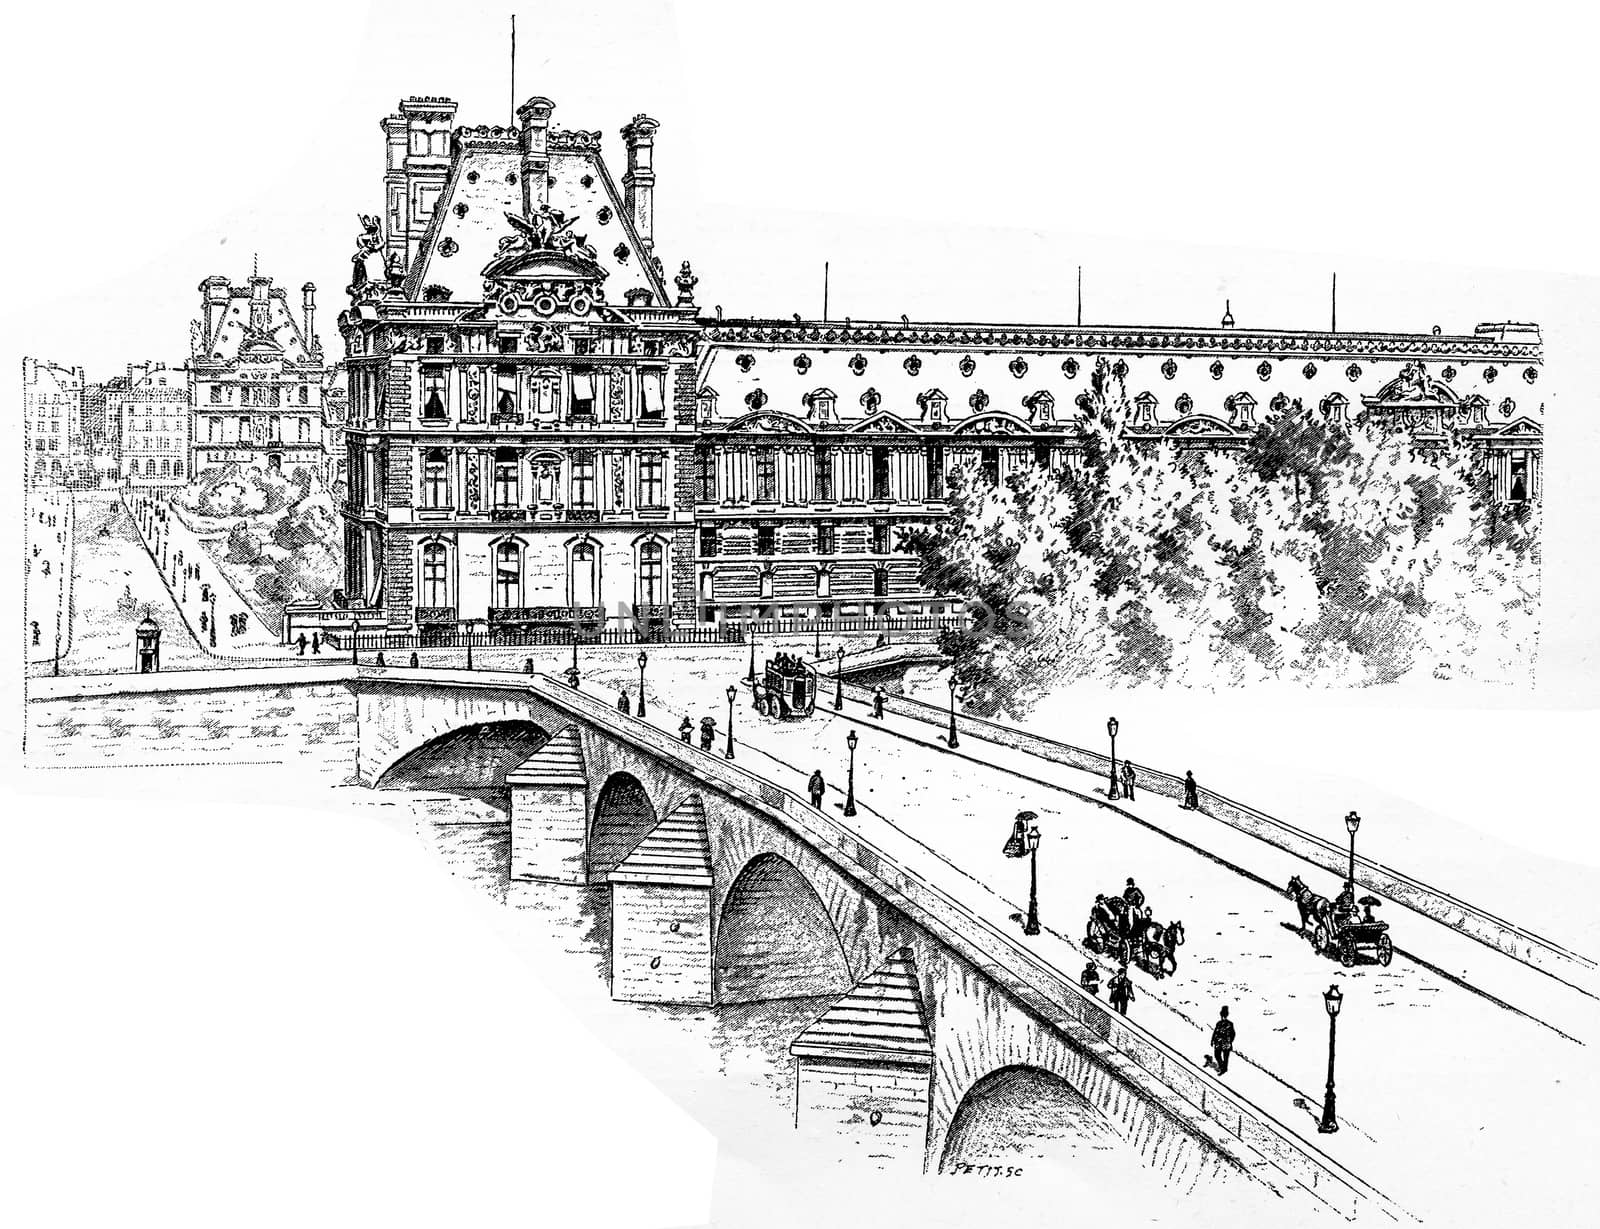 The Pavilion de Marsan, the Pavillon de Flore and the Pont Royal, Quai des Tuileries, vintage engraved illustration. Paris - Auguste VITU – 1890.